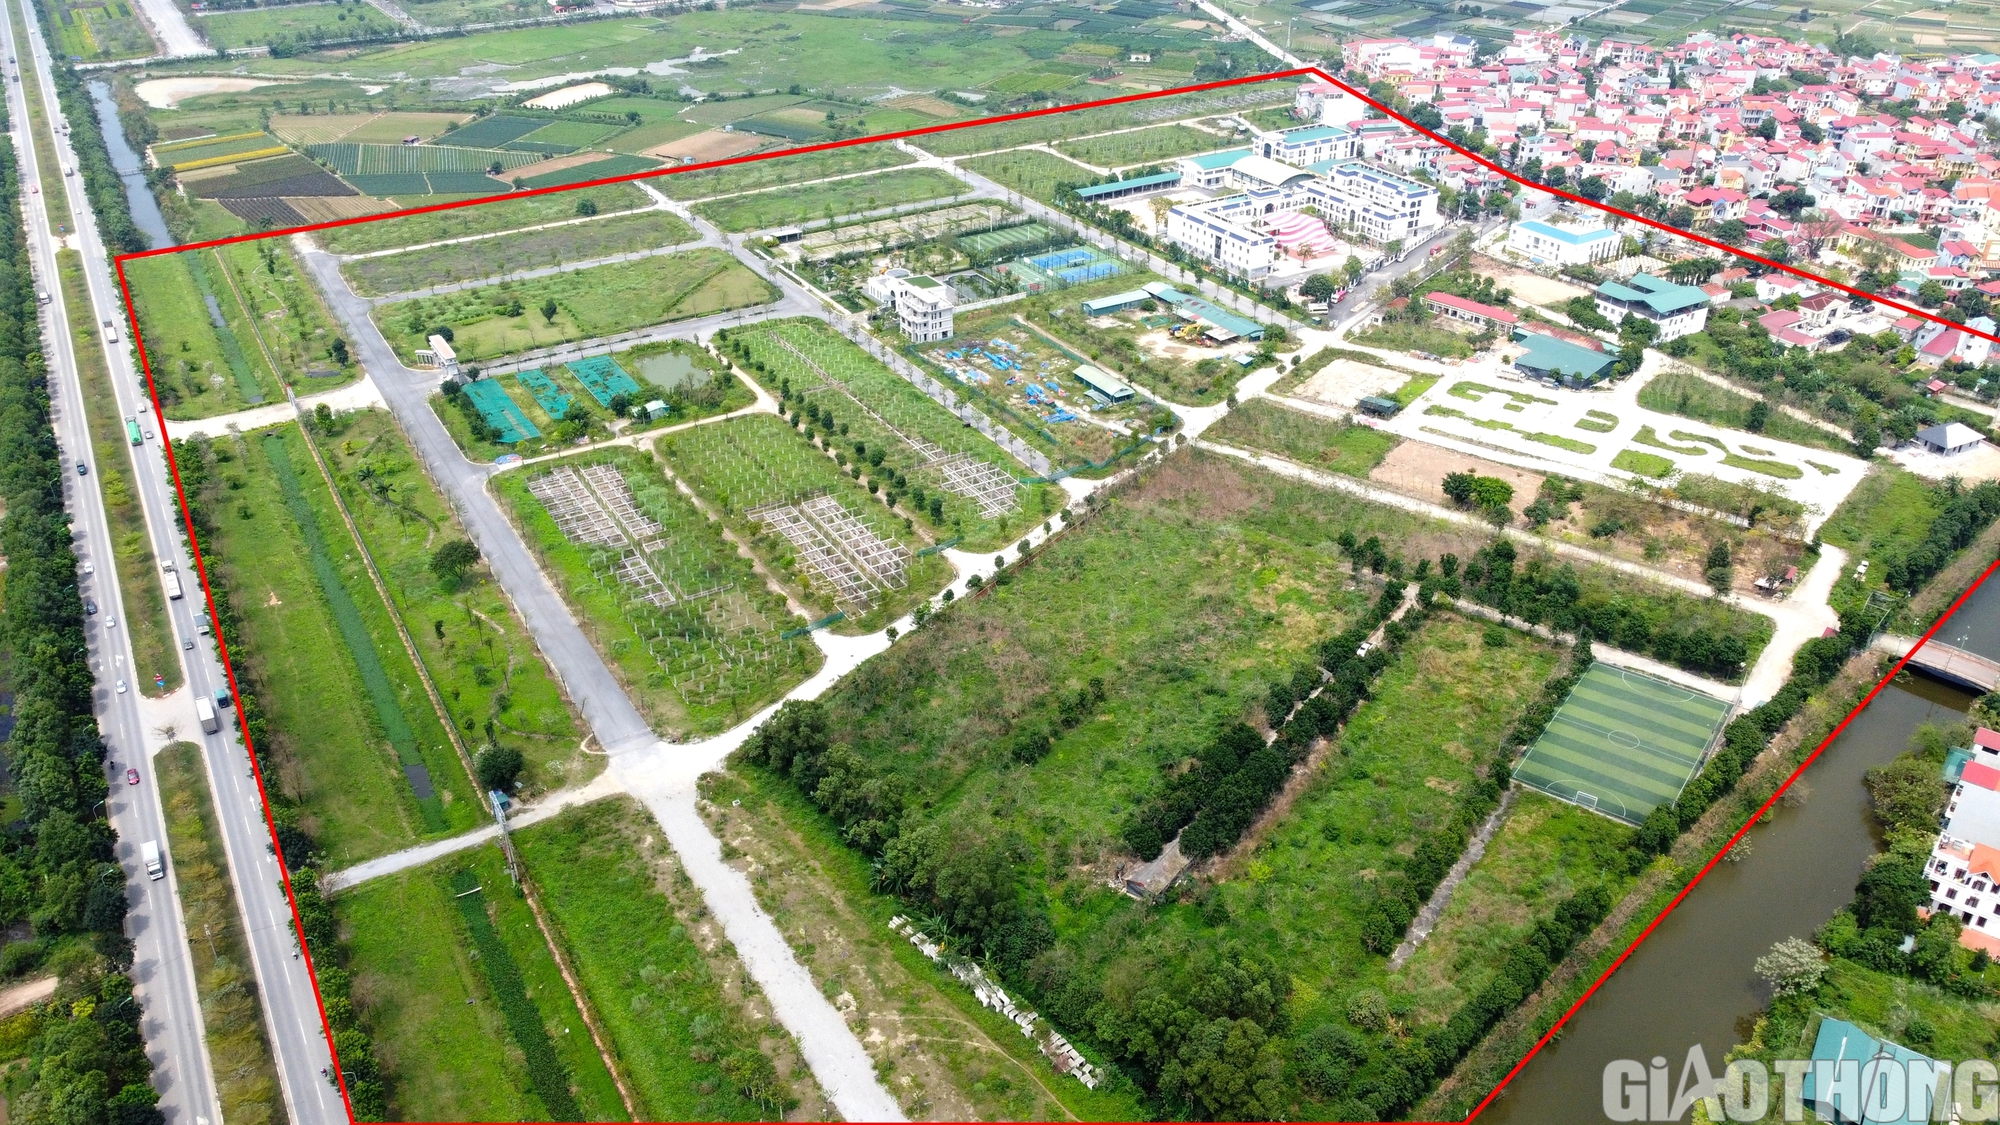 Cỏ mọc phủ dự án bất động sản nghìn tỷ ở Hà Nội- Ảnh 2.